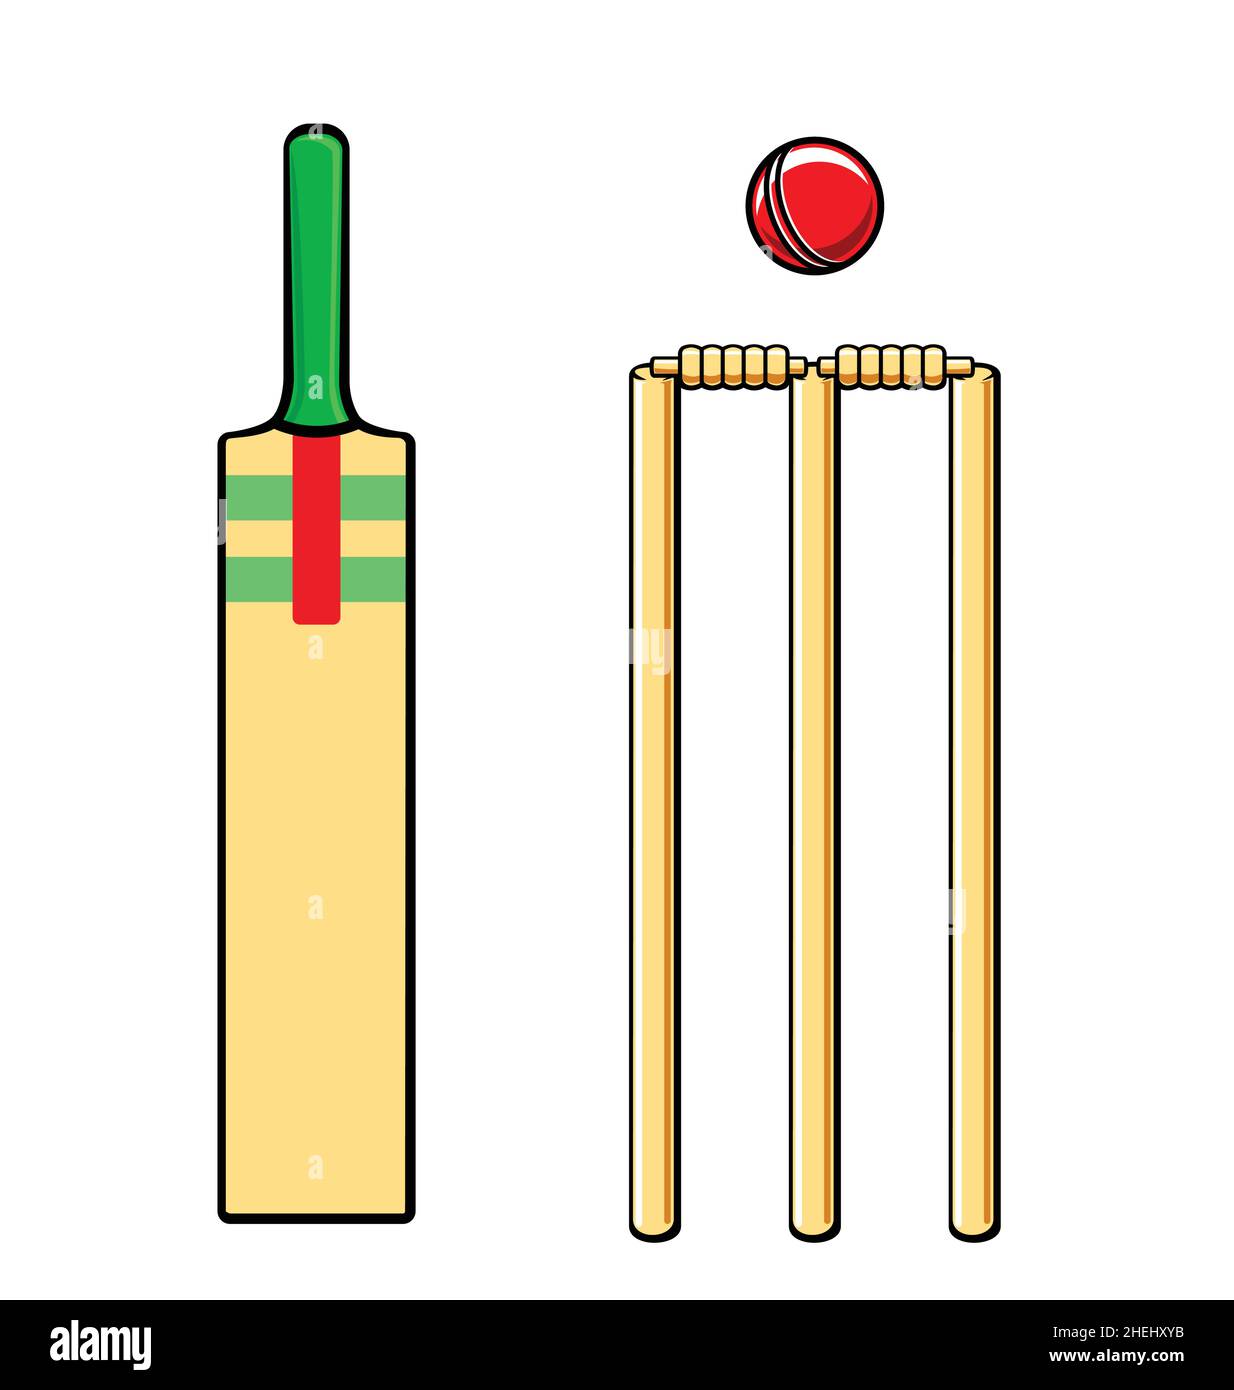 Einfache Cartoon stilisierte Cricket-Set Fledermaus stolpert Nägel und rote Kugel Vektor auf weißem Hintergrund isoliert Stock Vektor